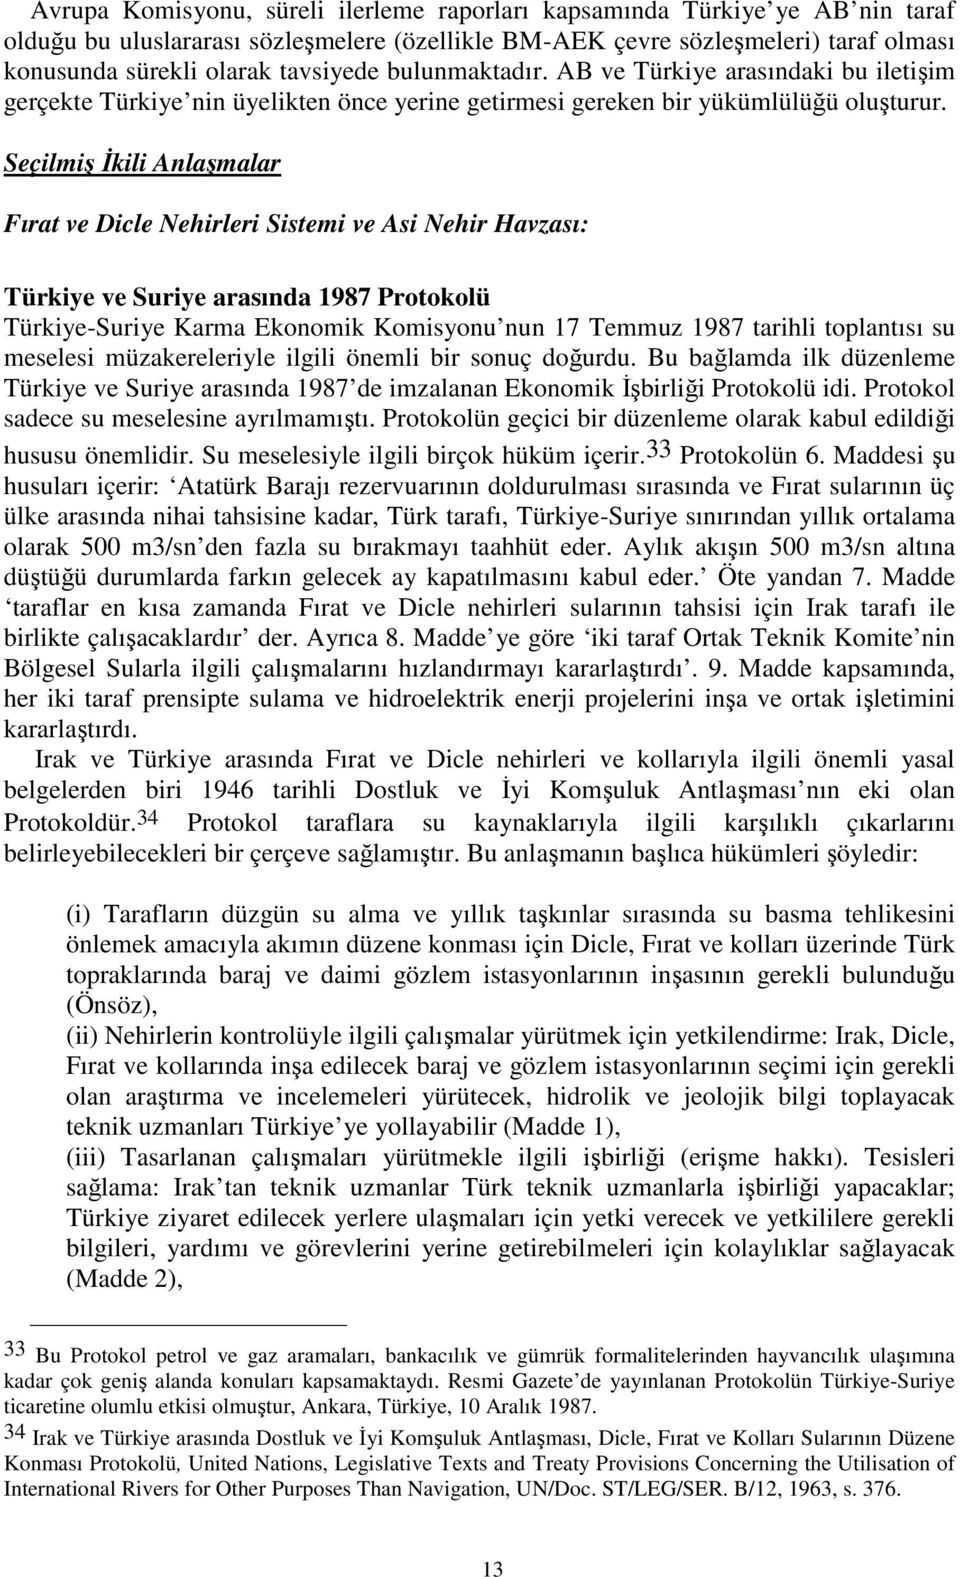 Seçilmiş İkili Anlaşmalar Fırat ve Dicle Nehirleri Sistemi ve Asi Nehir Havzası: Türkiye ve Suriye arasında 1987 Protokolü Türkiye-Suriye Karma Ekonomik Komisyonu nun 17 Temmuz 1987 tarihli